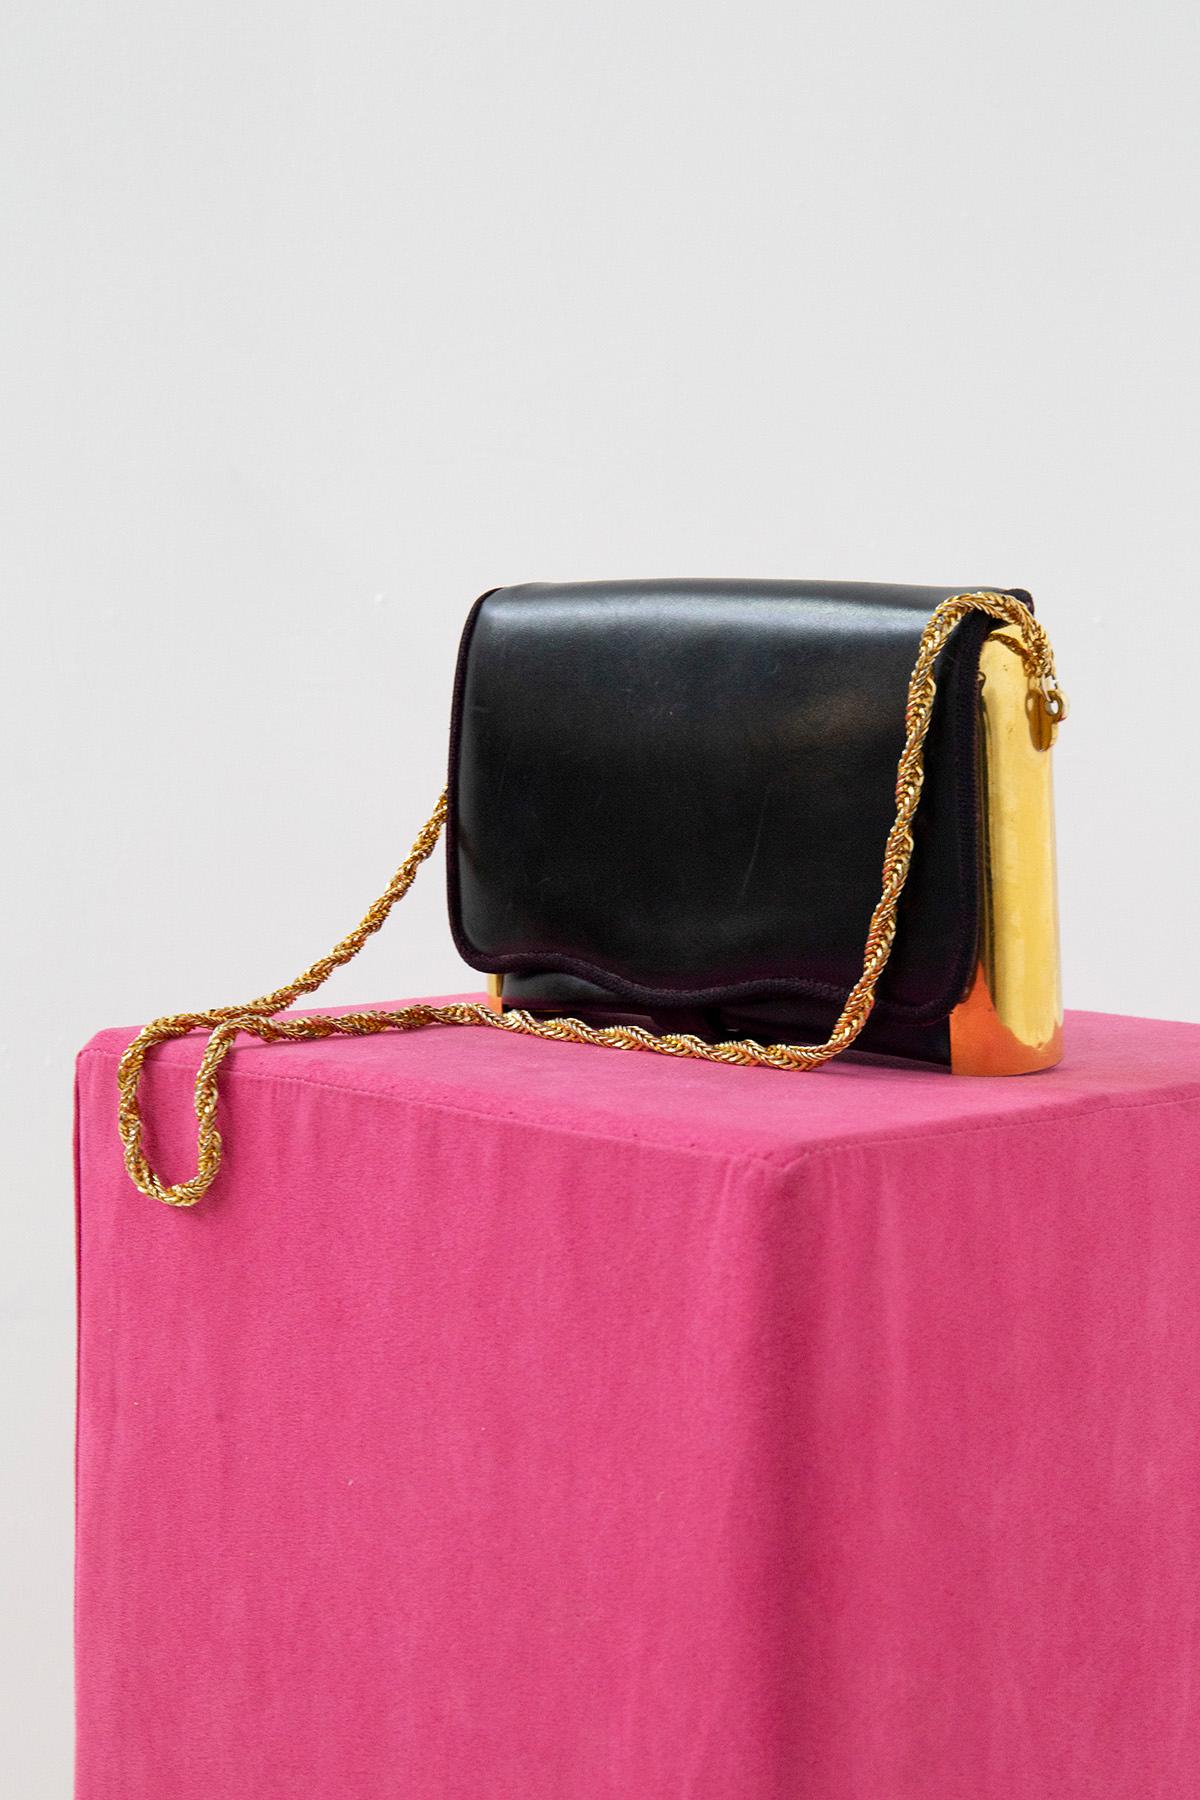 Elegante und seltene Umhängetasche von Roberta di Camerino aus den 1980er Jahren. Die Handtasche besteht aus einer vergoldeten Metallkette mit gewebtem Muster. Die Handtasche ist aus schwarzem Leder gefertigt und hat einen vergoldeten Metallrahmen,